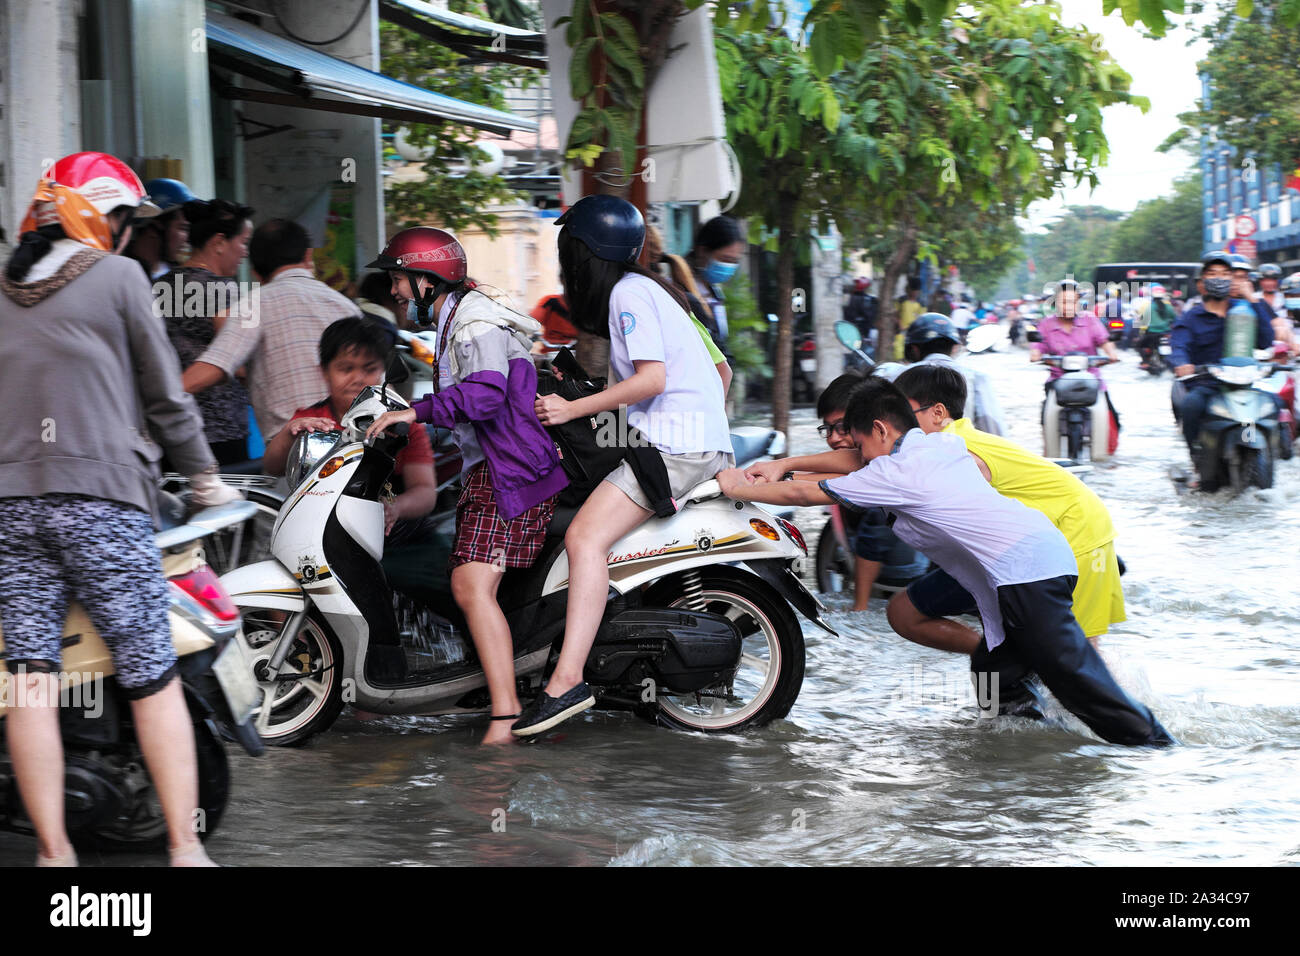 HO CHI MINH VILLE, VIET NAM, les petits garçons aident les femmes à pousser la moto que le moteur tombe en panne dans l'eau sur la rue inondée par la marée haute à la chaussée Banque D'Images